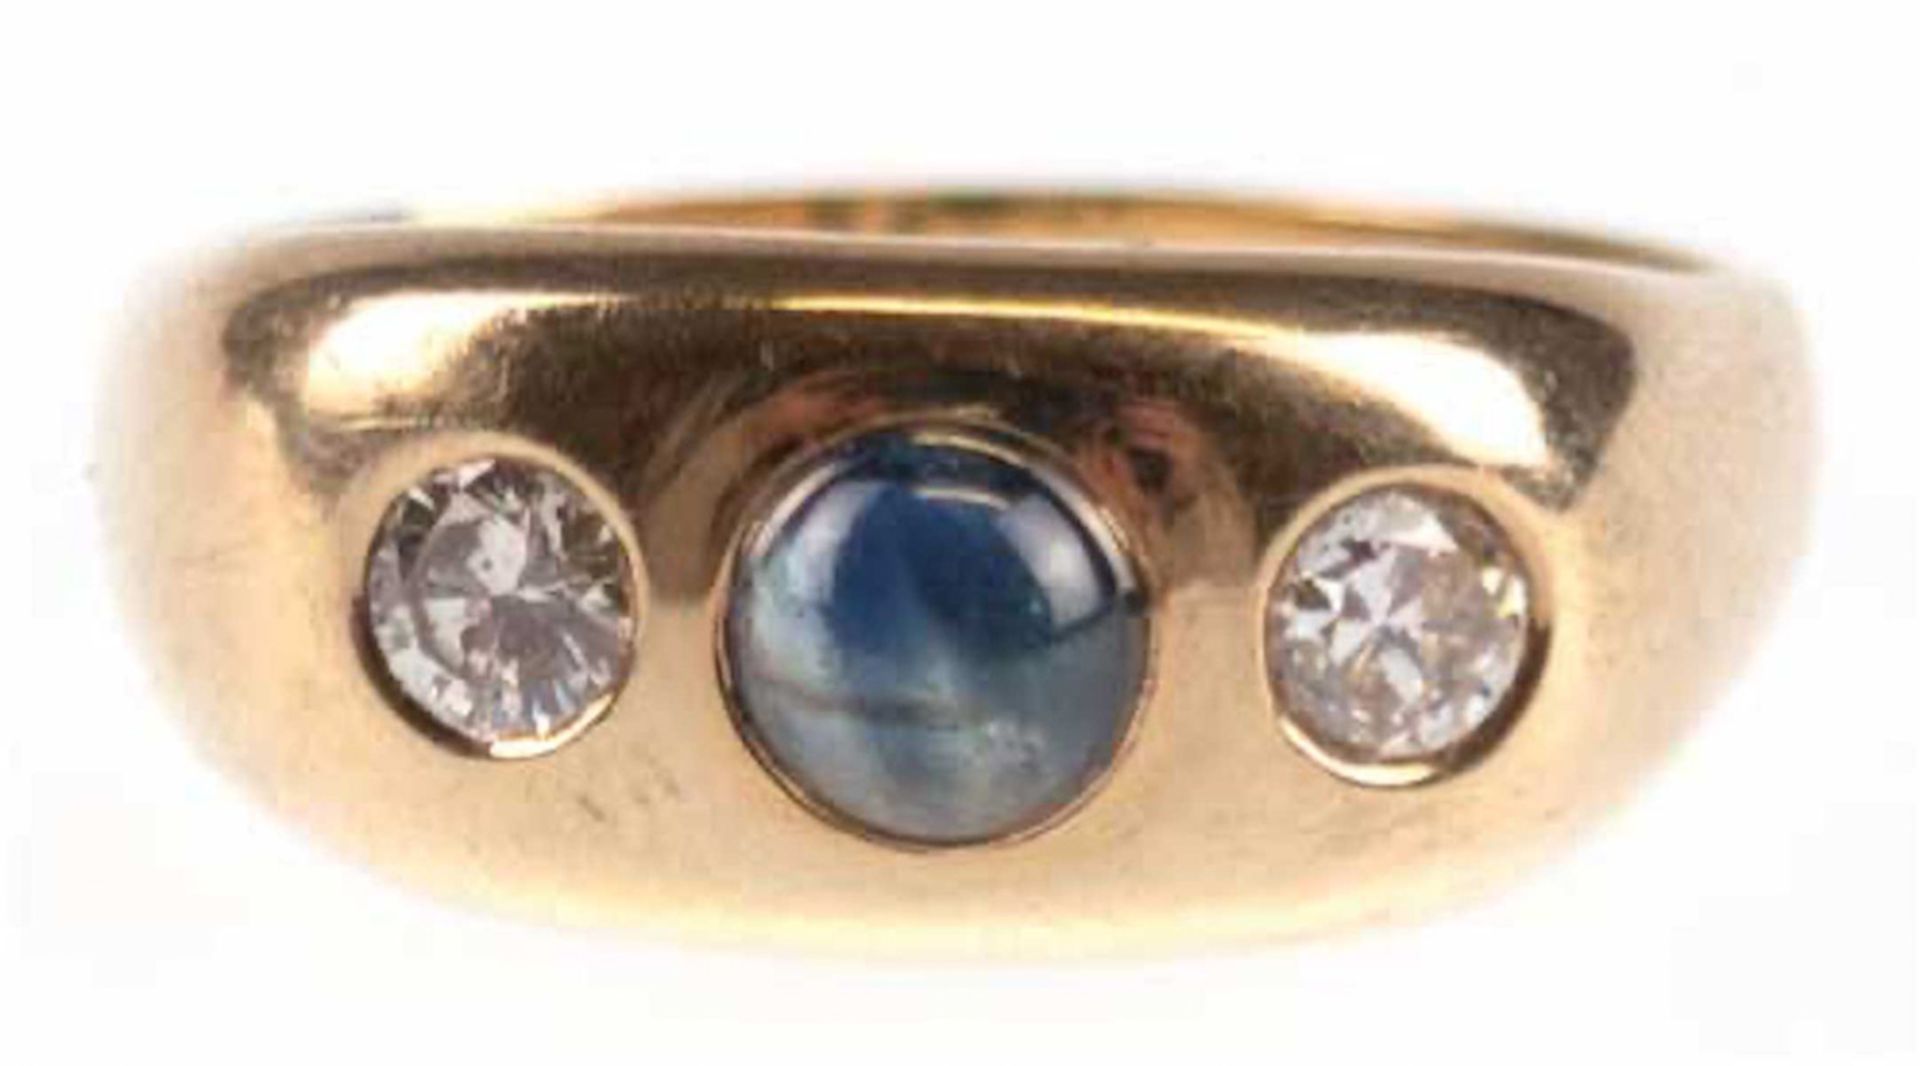 Ring, 585er GG, 2 Brillanten zus. ca. 0,50 ct., 1 Saphircabochon, Innendurchmesser 20,6mm, RG